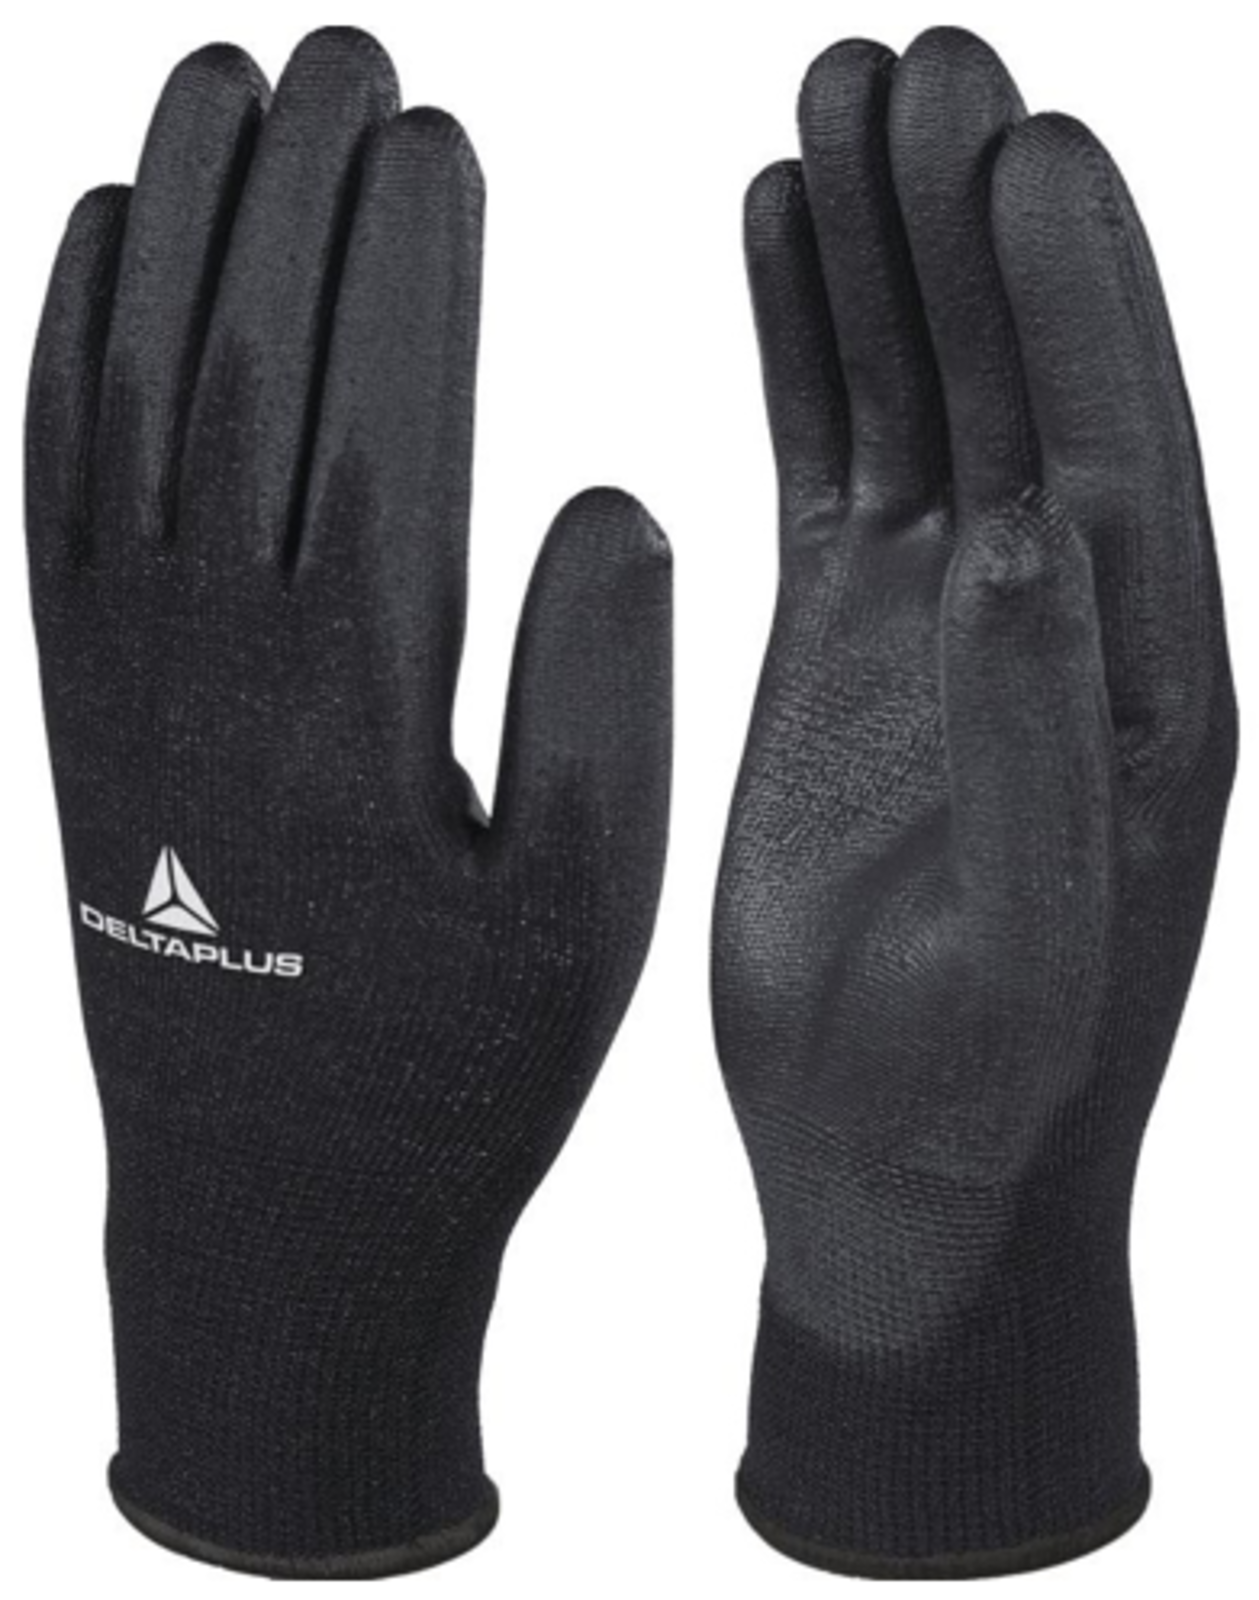 Pracovné rukavice Delta Plus VE702PN - veľkosť: 10/XL, farba: čierna